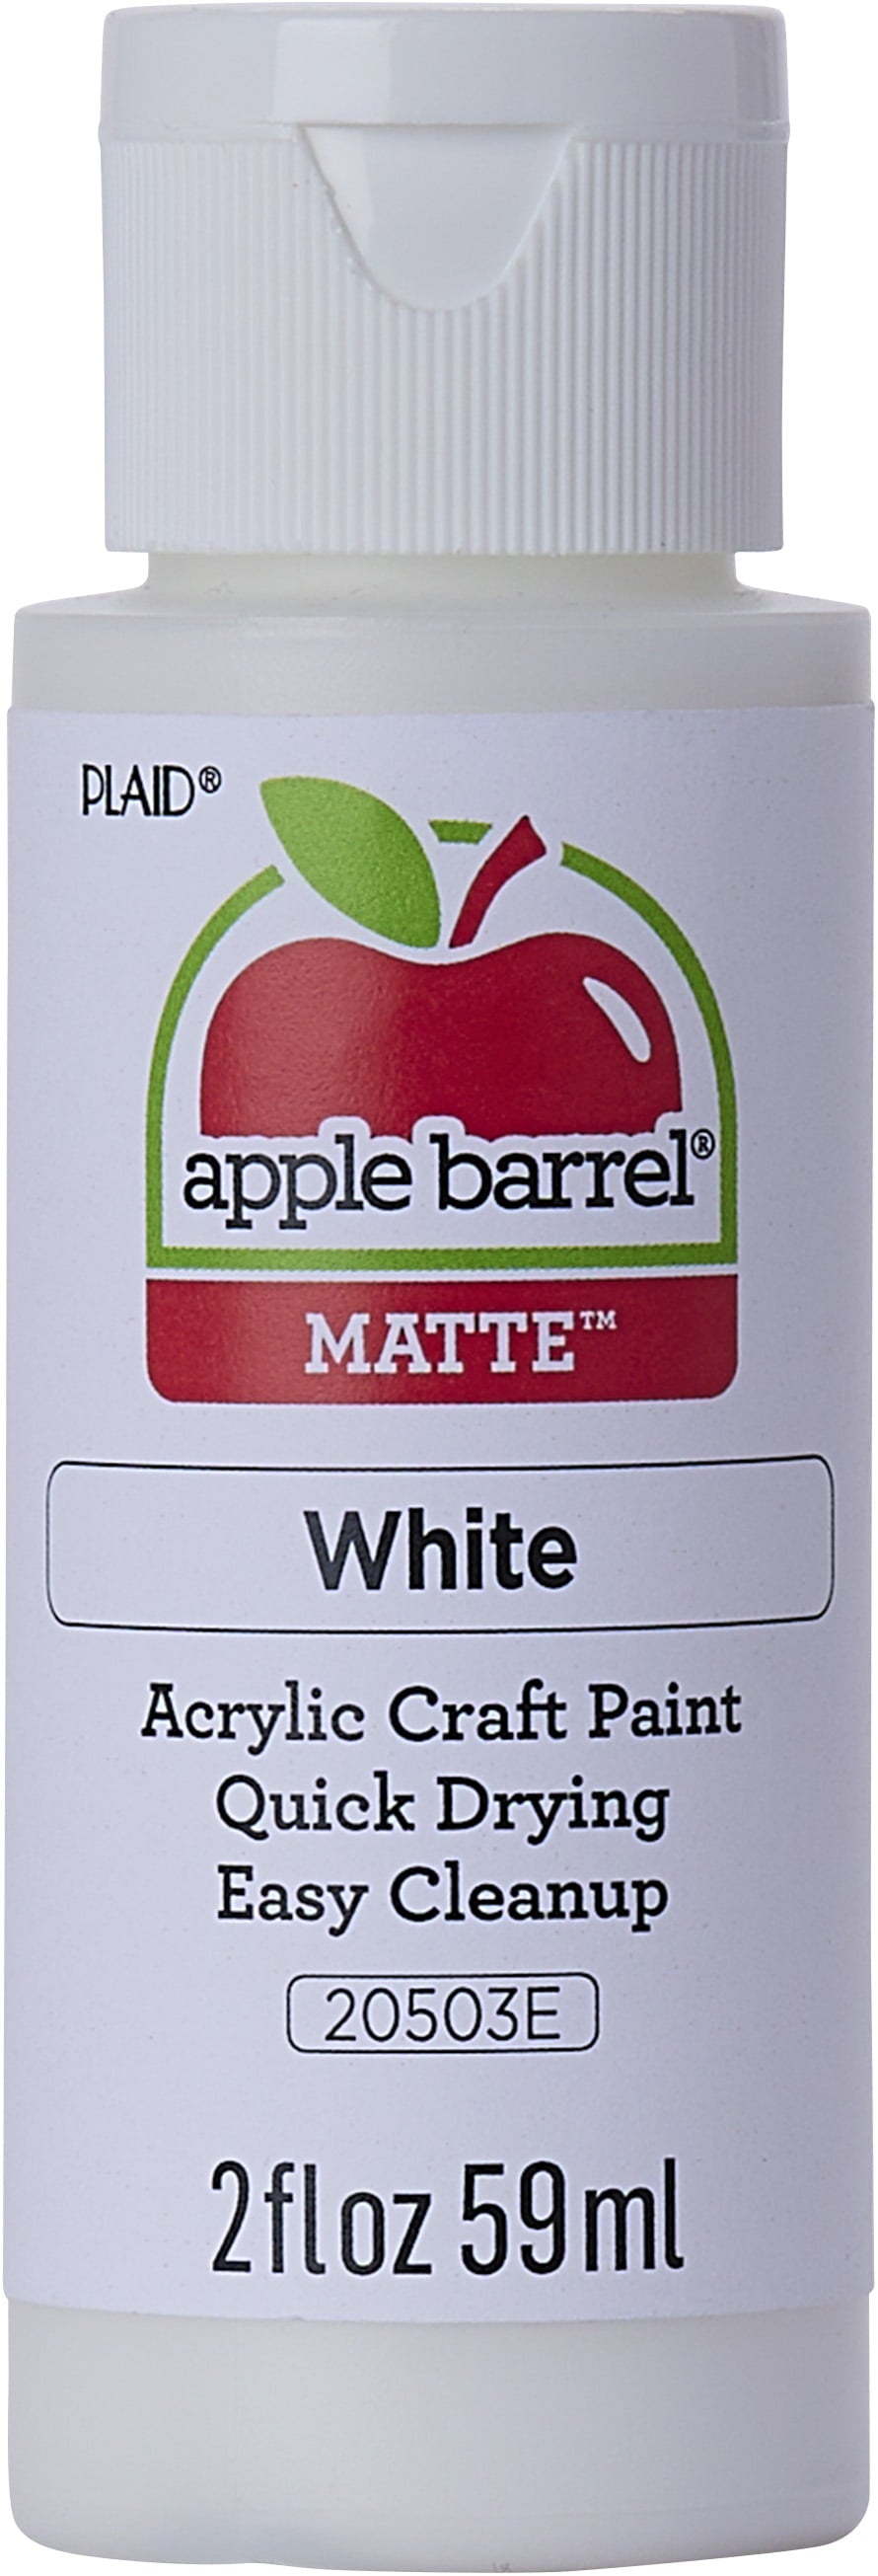 Apple Barrel Acrylic Craft Paint, Matte Finish, Antique Parchment